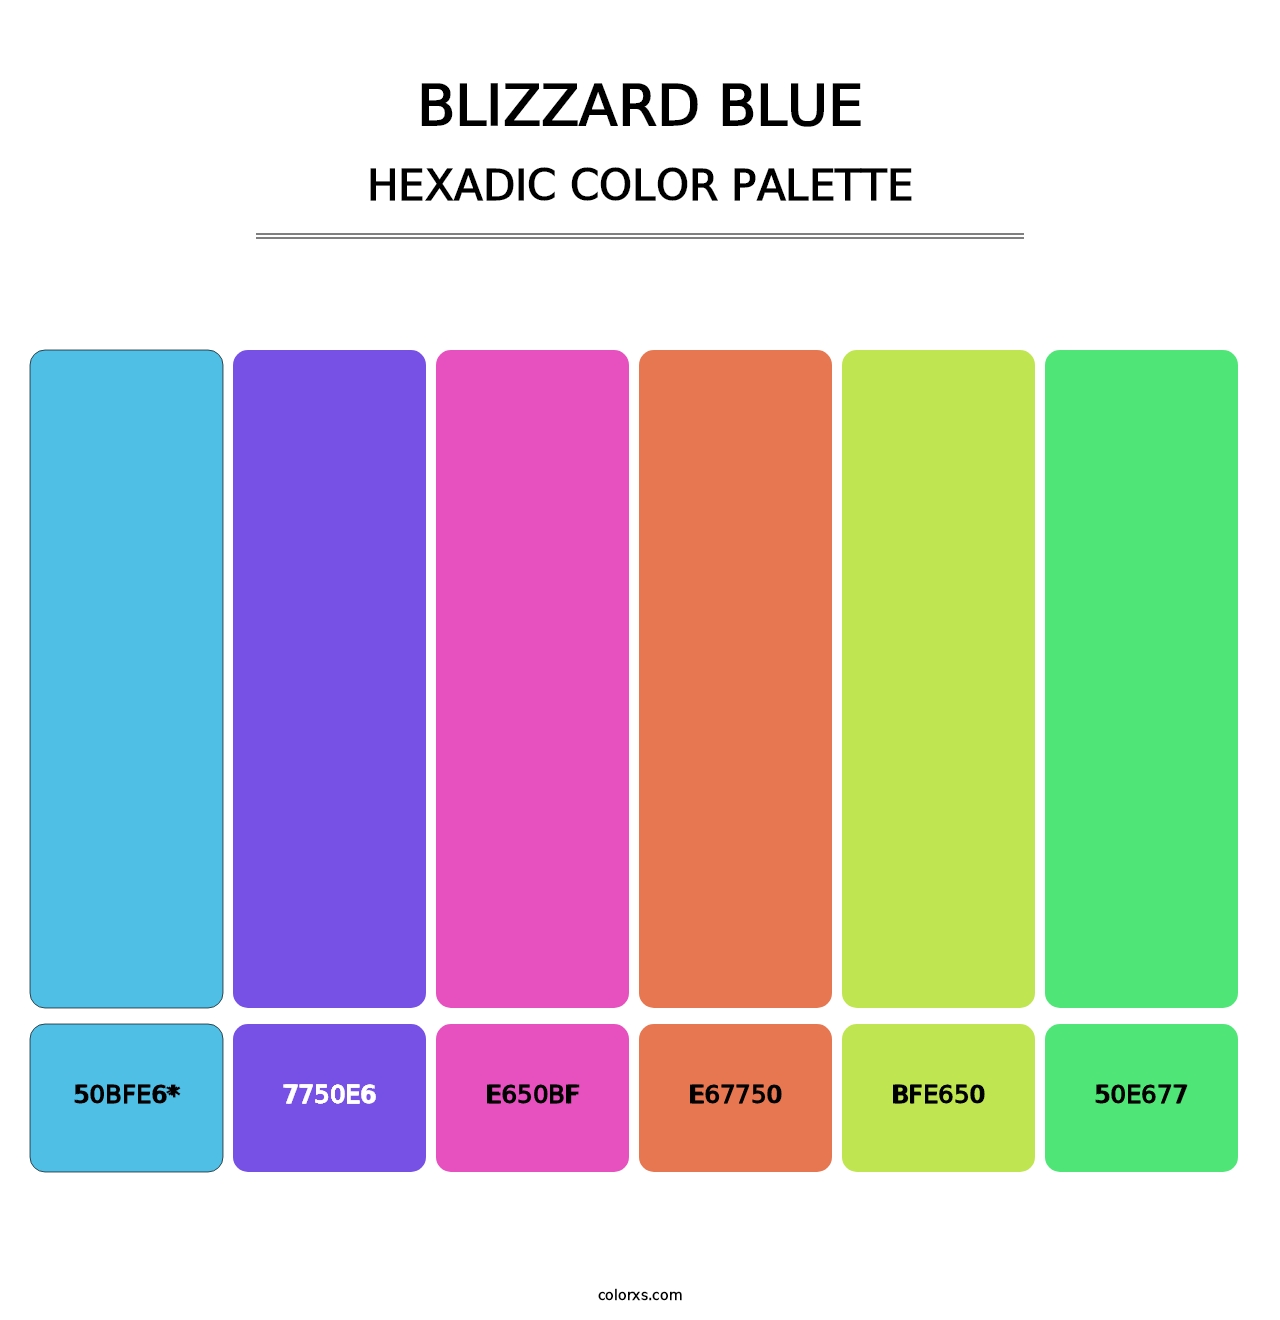 Blizzard Blue - Hexadic Color Palette